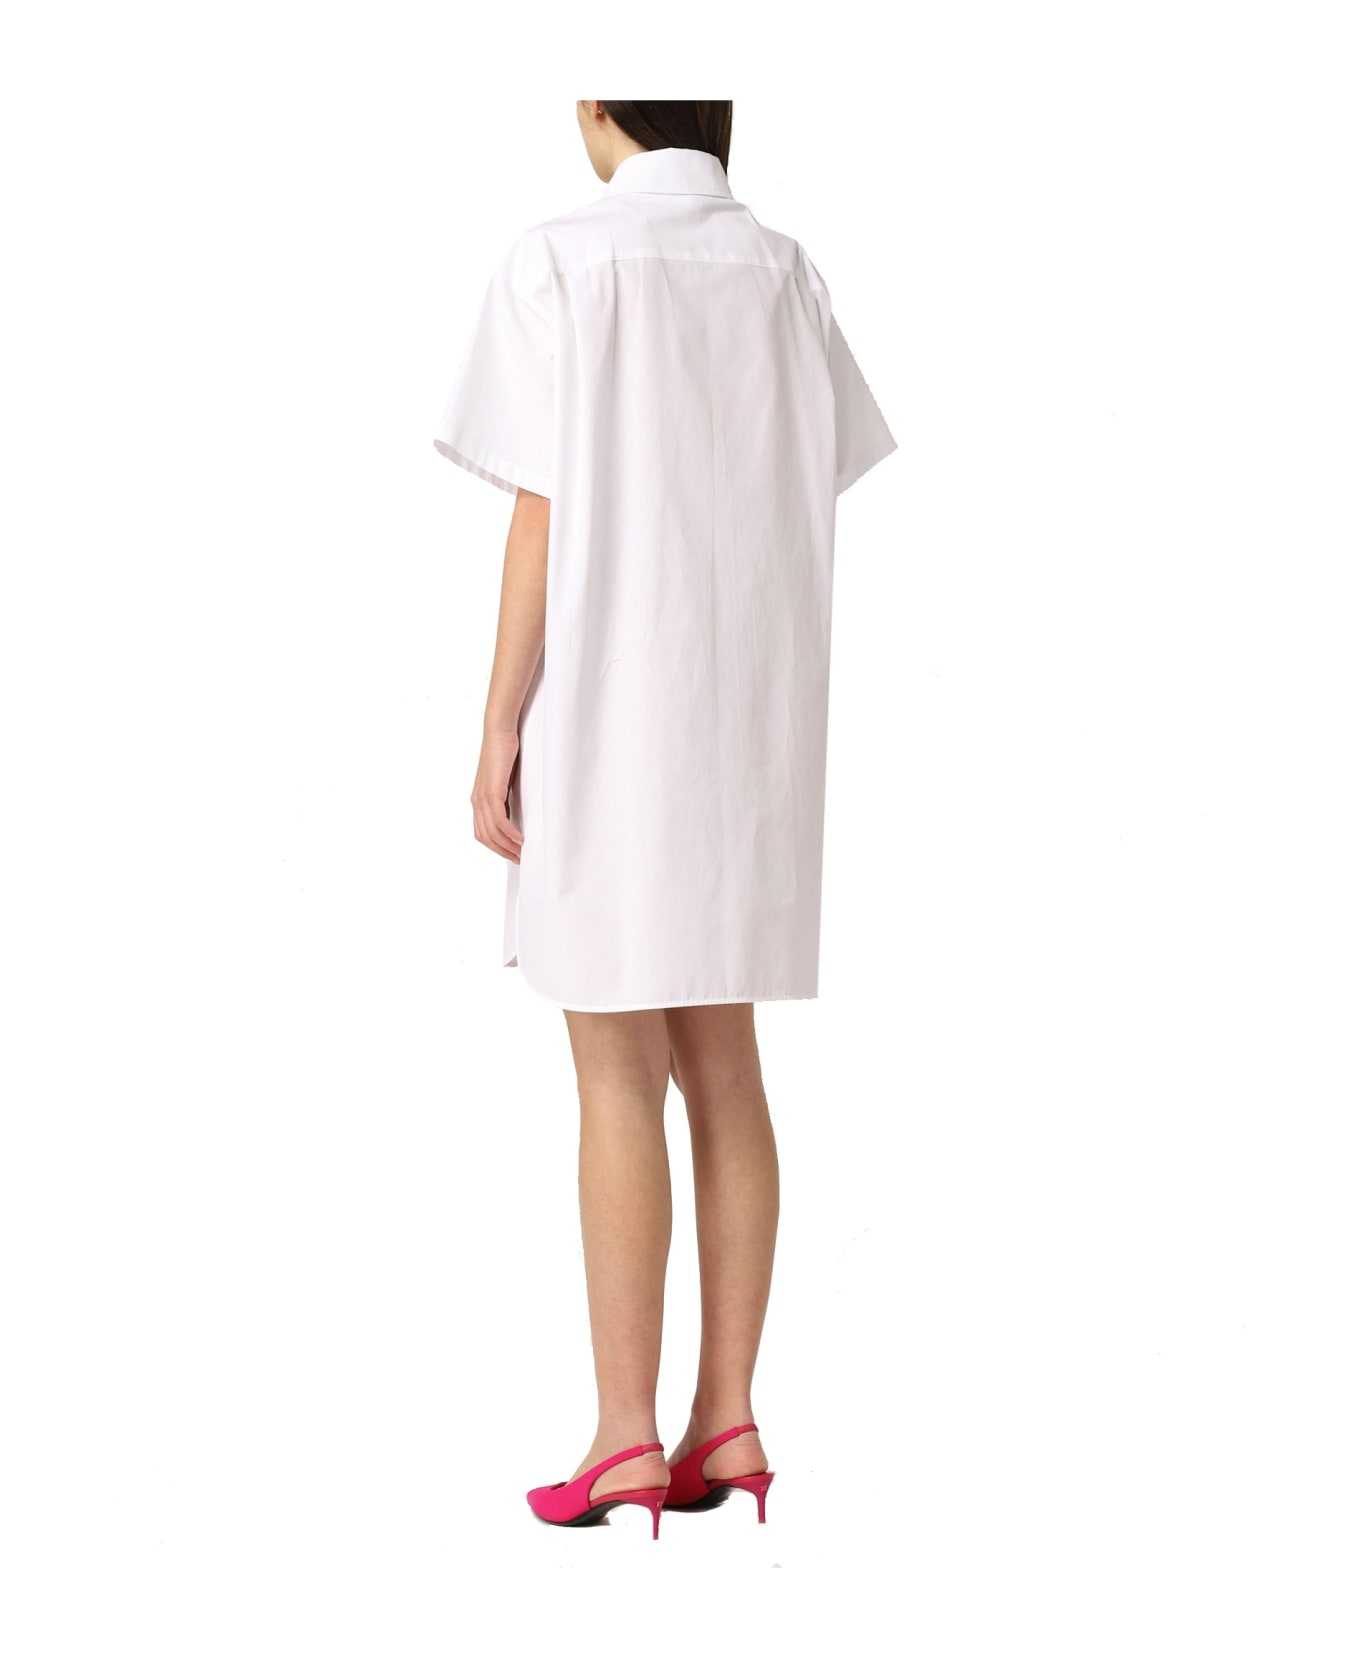 Max Mara Palau Chemisier Dress - White シャツ